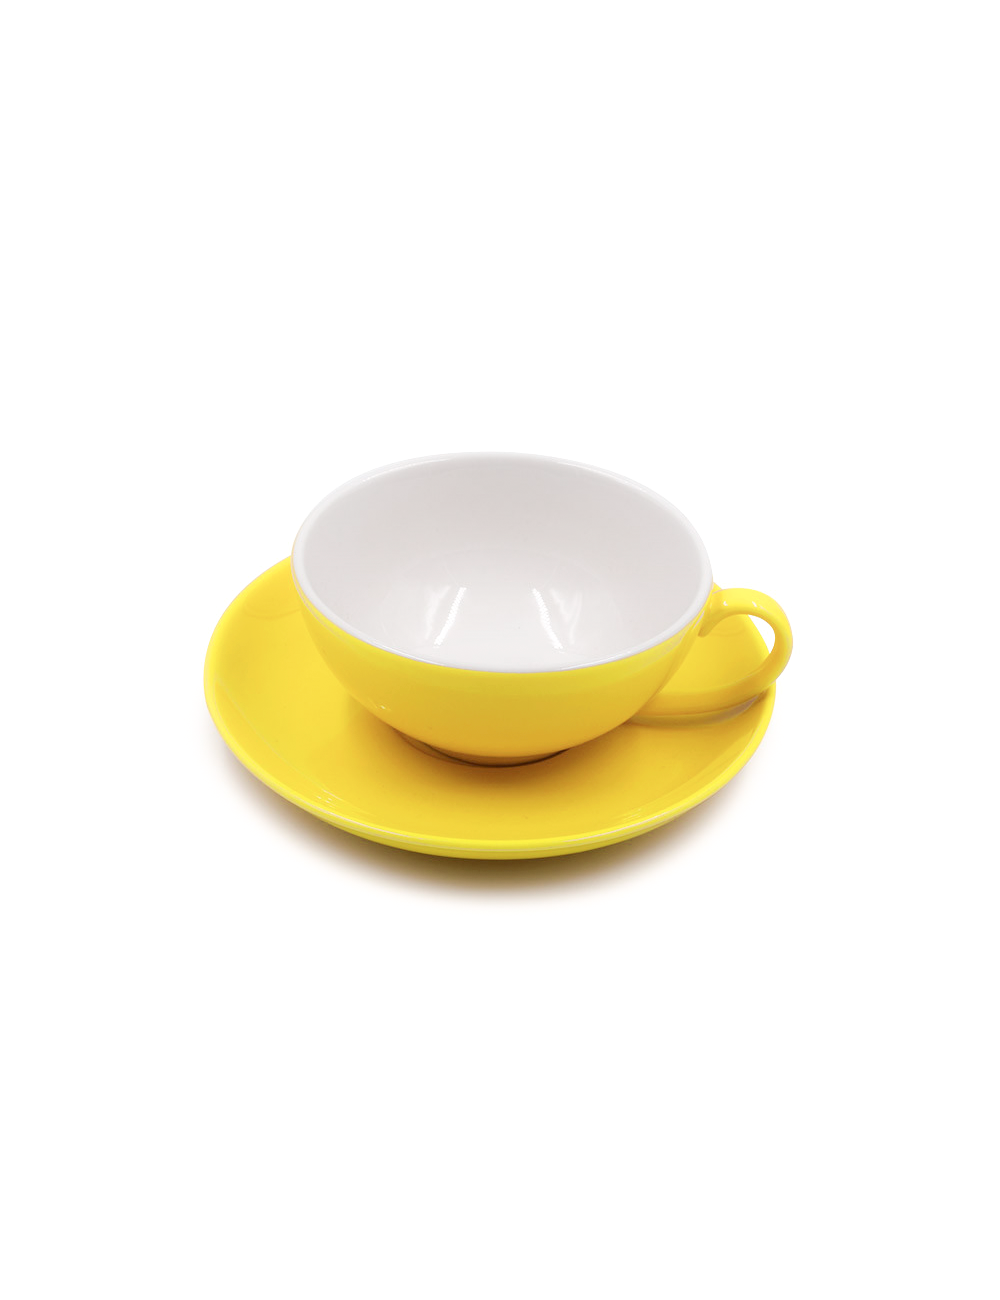 Tazza da tè Color in porcellana gialla da 160 ml - La Pianta del Tè shop on line